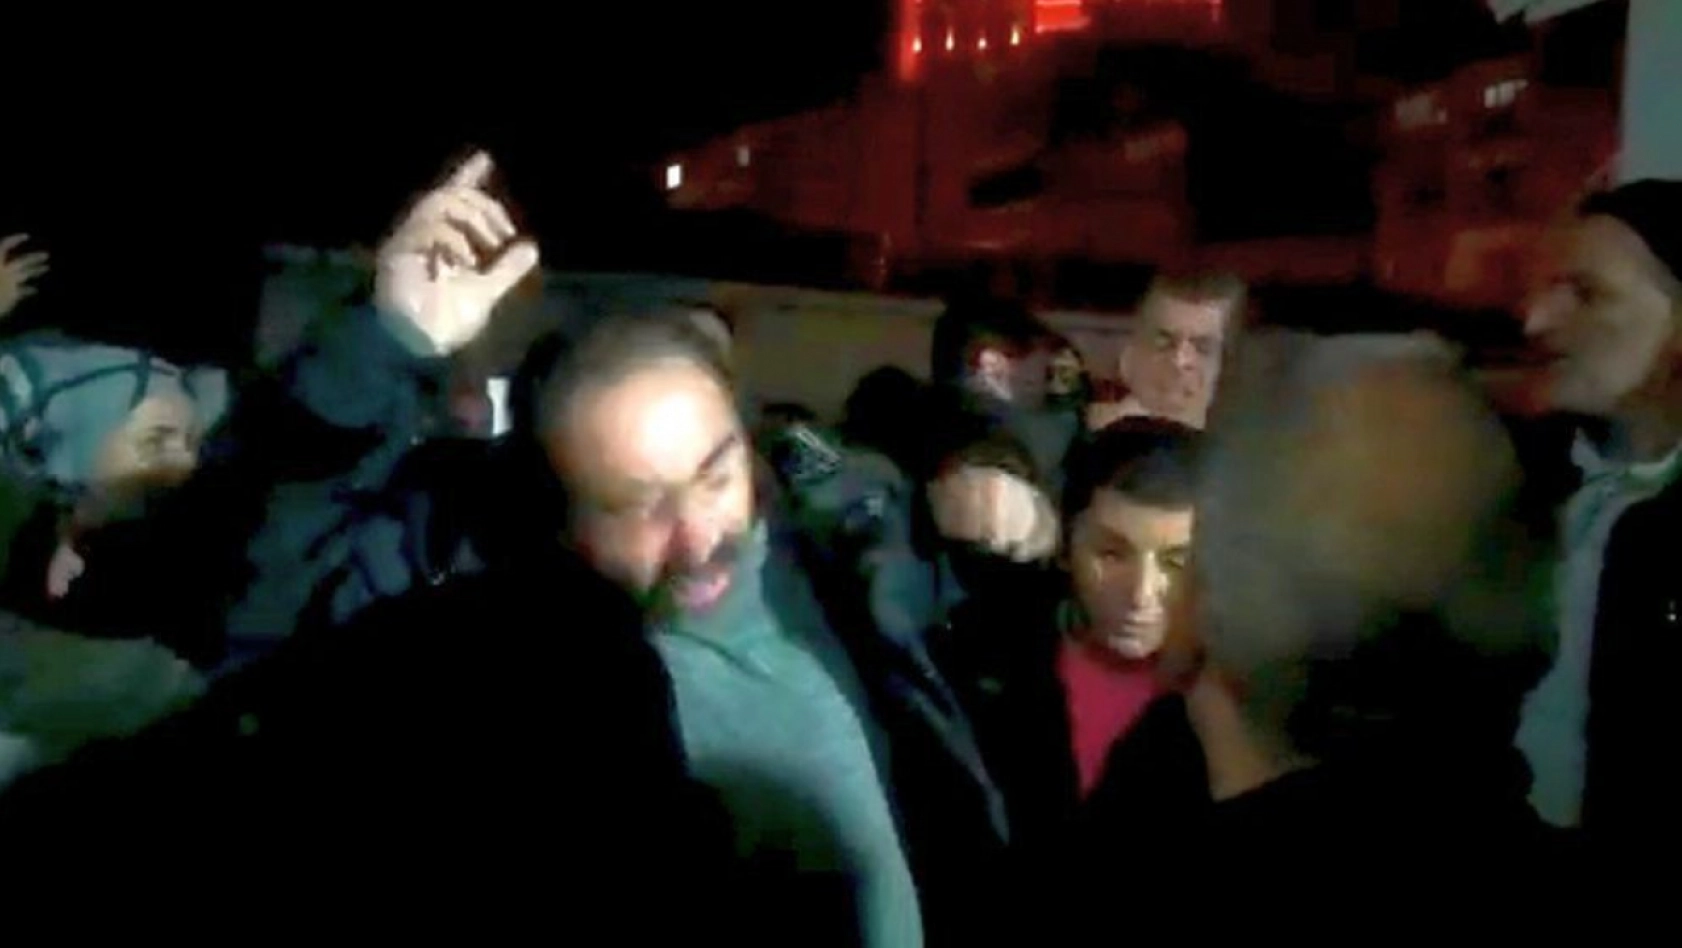 Malatya CHP İl Başkanına yumruklu saldırı